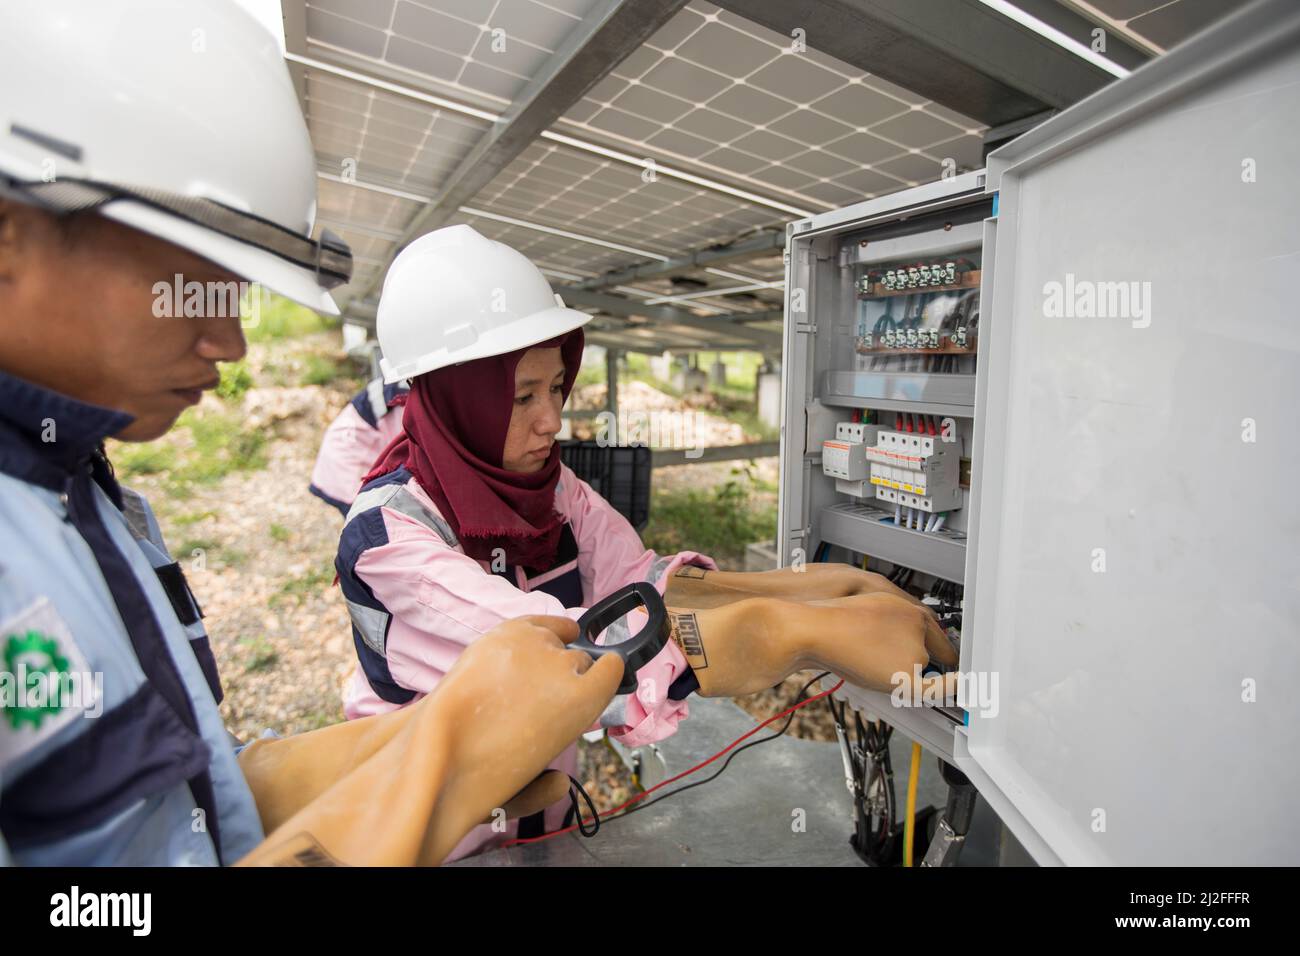 Técnicos eléctricos menores inspeccionan y mantienen paneles solares en la isla Karampuang, Indonesia, que fueron instalados como parte de la prosperidad verde Foto de stock